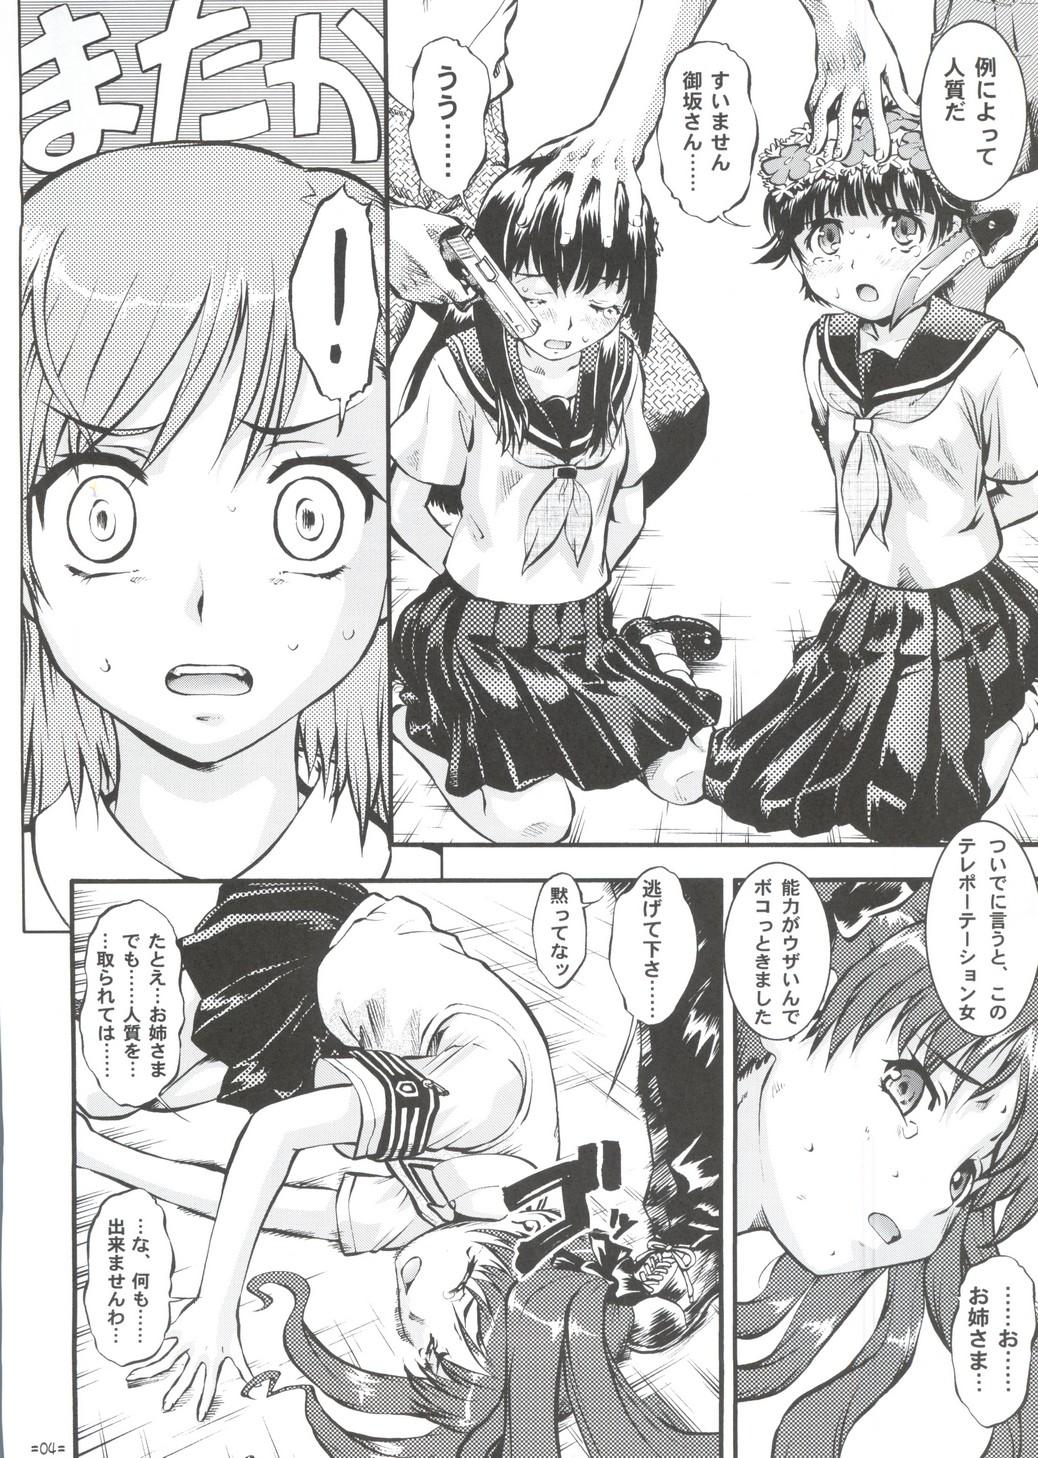 Bound W Poron TO-R - Toaru kagaku no railgun Koihime musou Abuse - Page 3